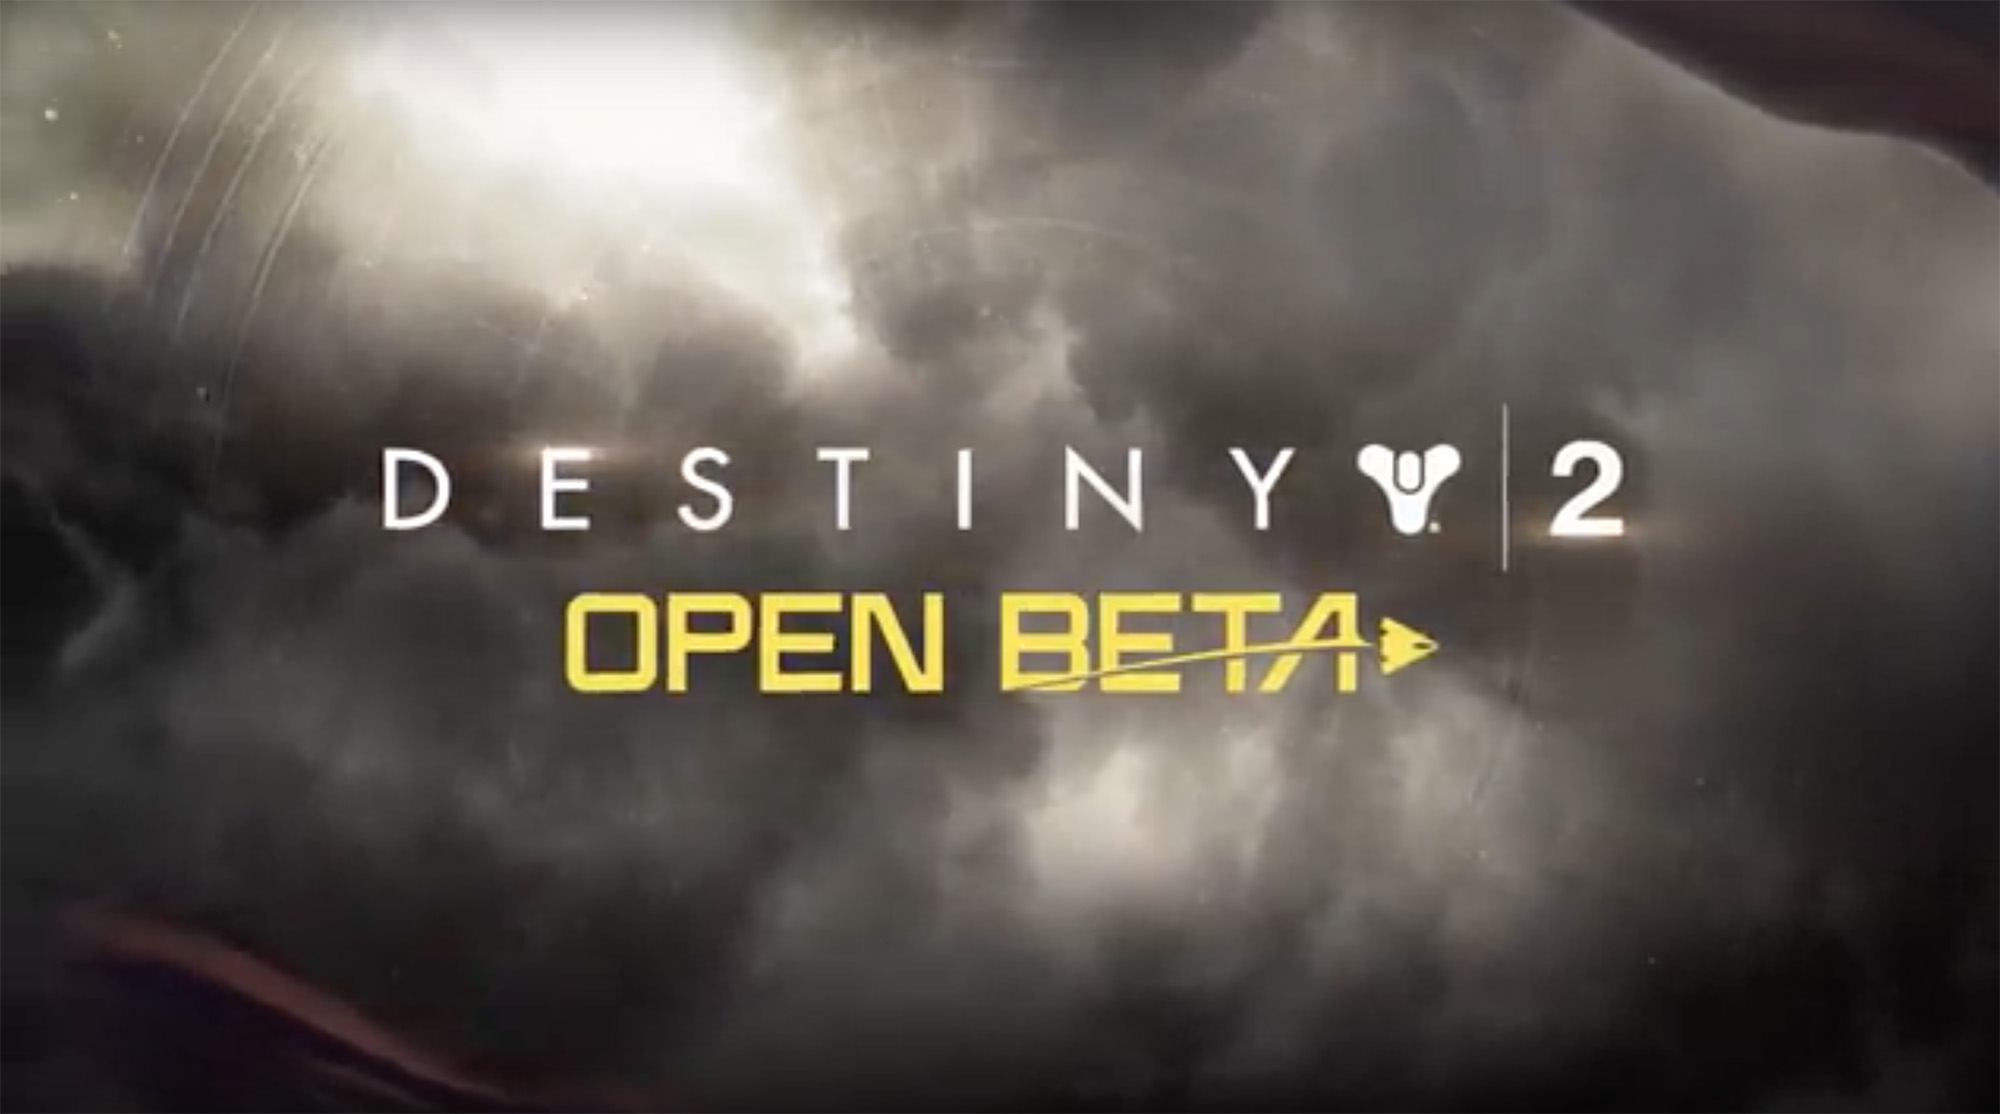 Destiny 2-betaen er åpen for alle konsollspillere - PC får en separat beta senere.